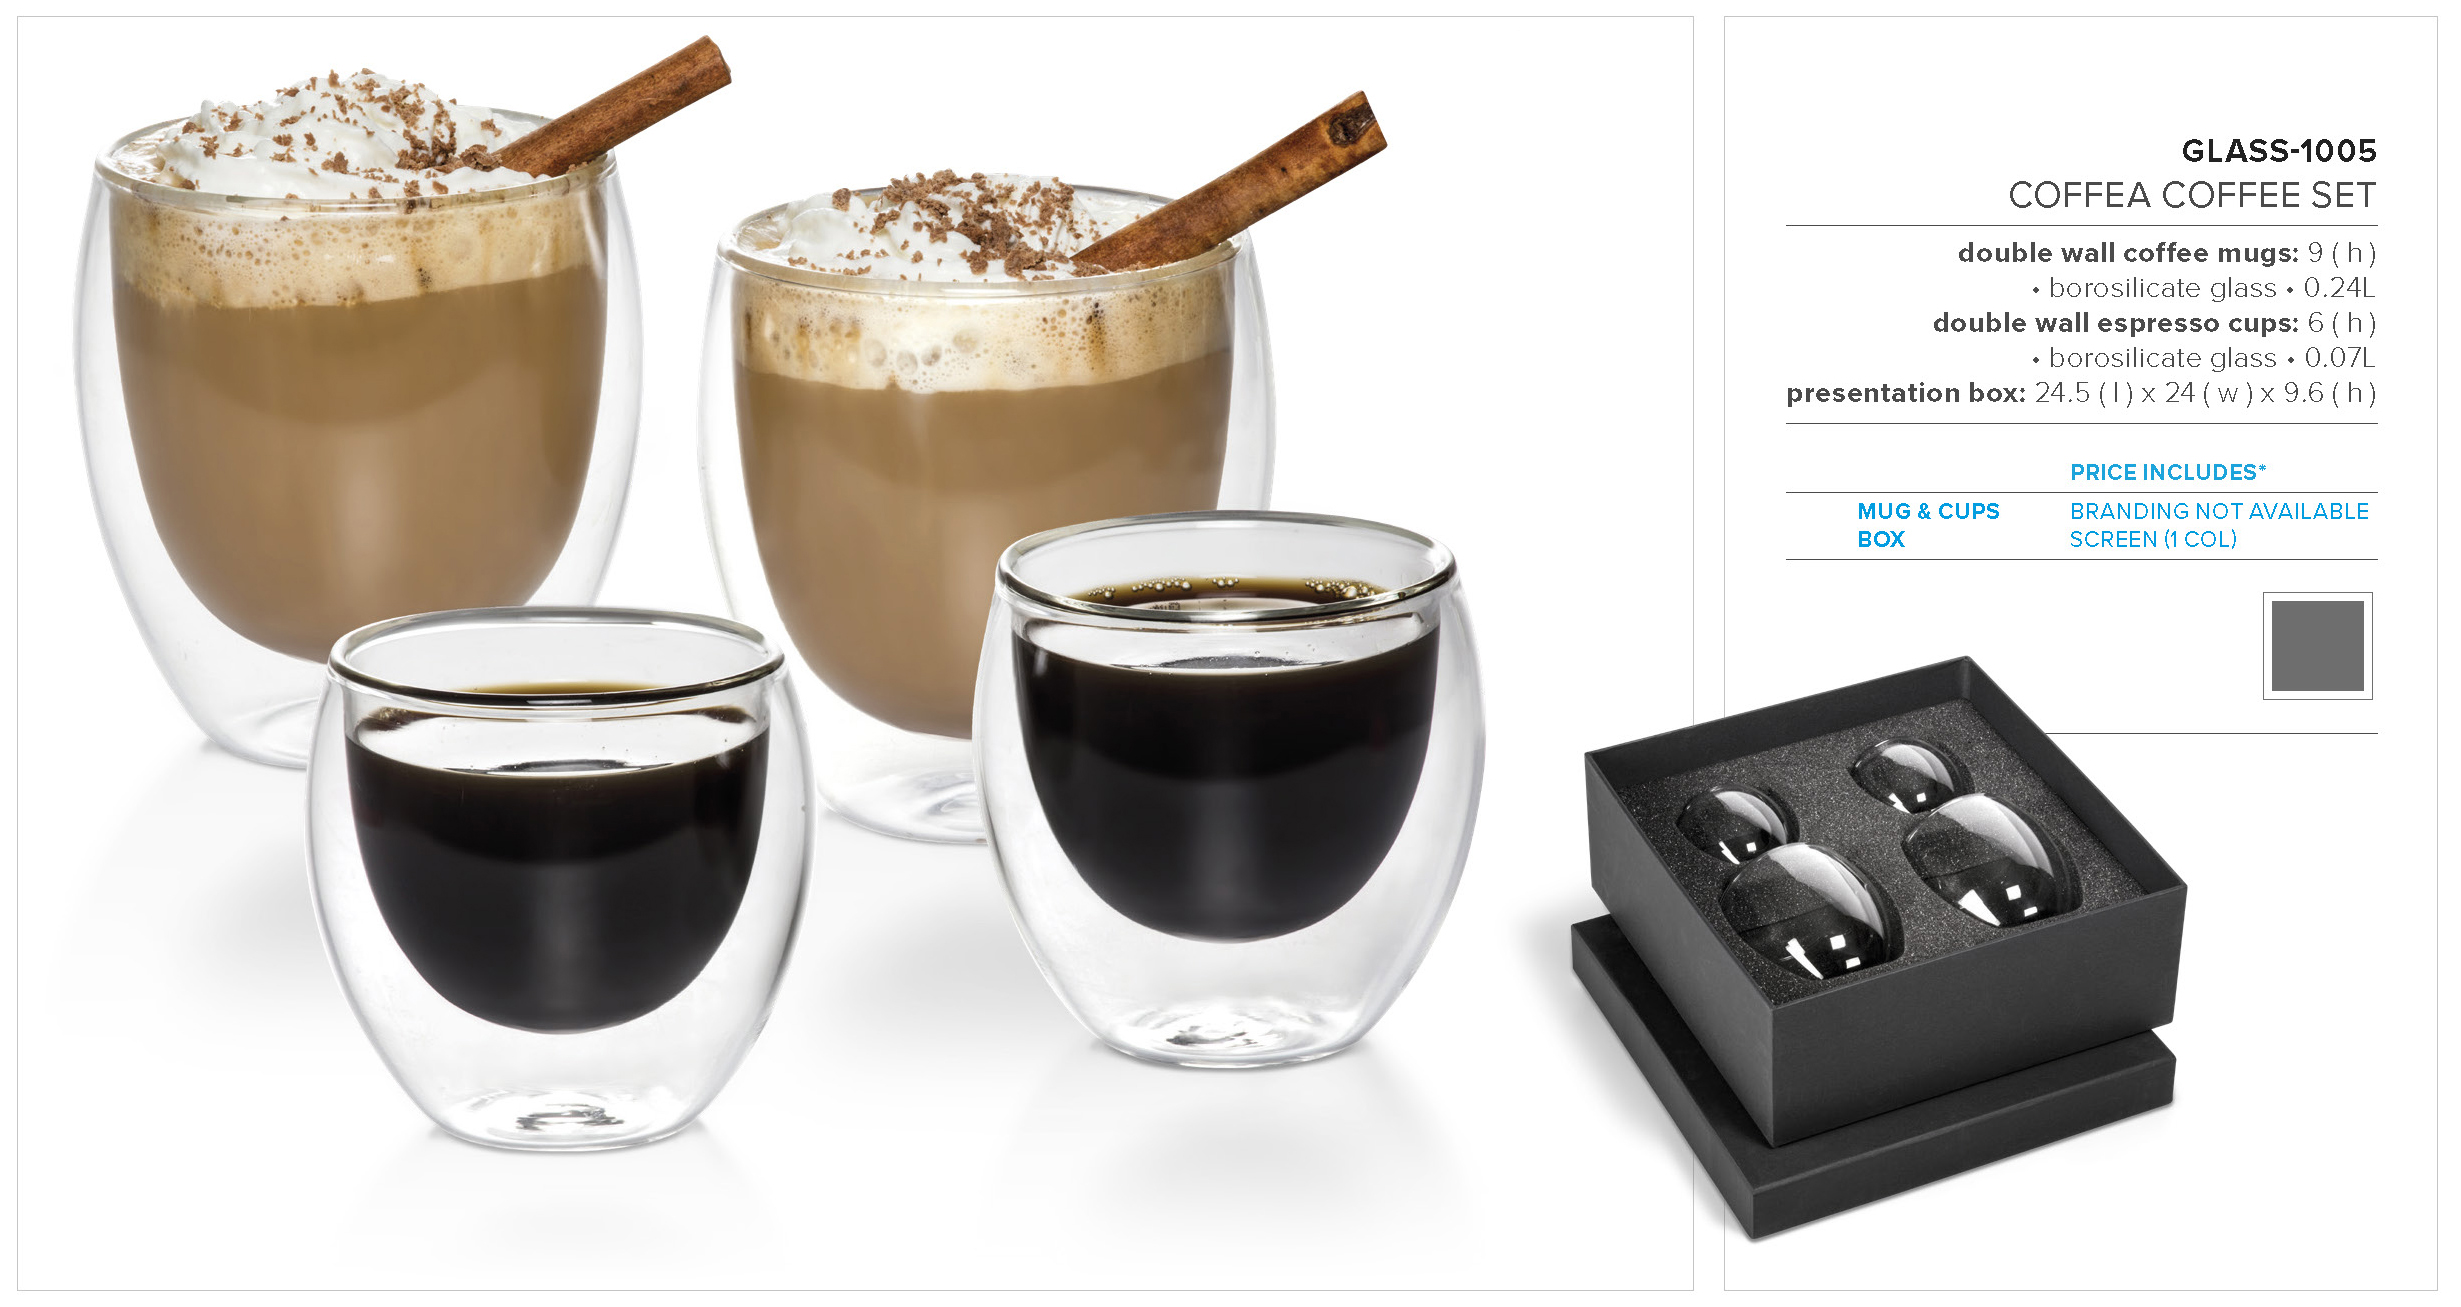 GLASS-1005 - Coffea Coffee Set - Catalogue Image